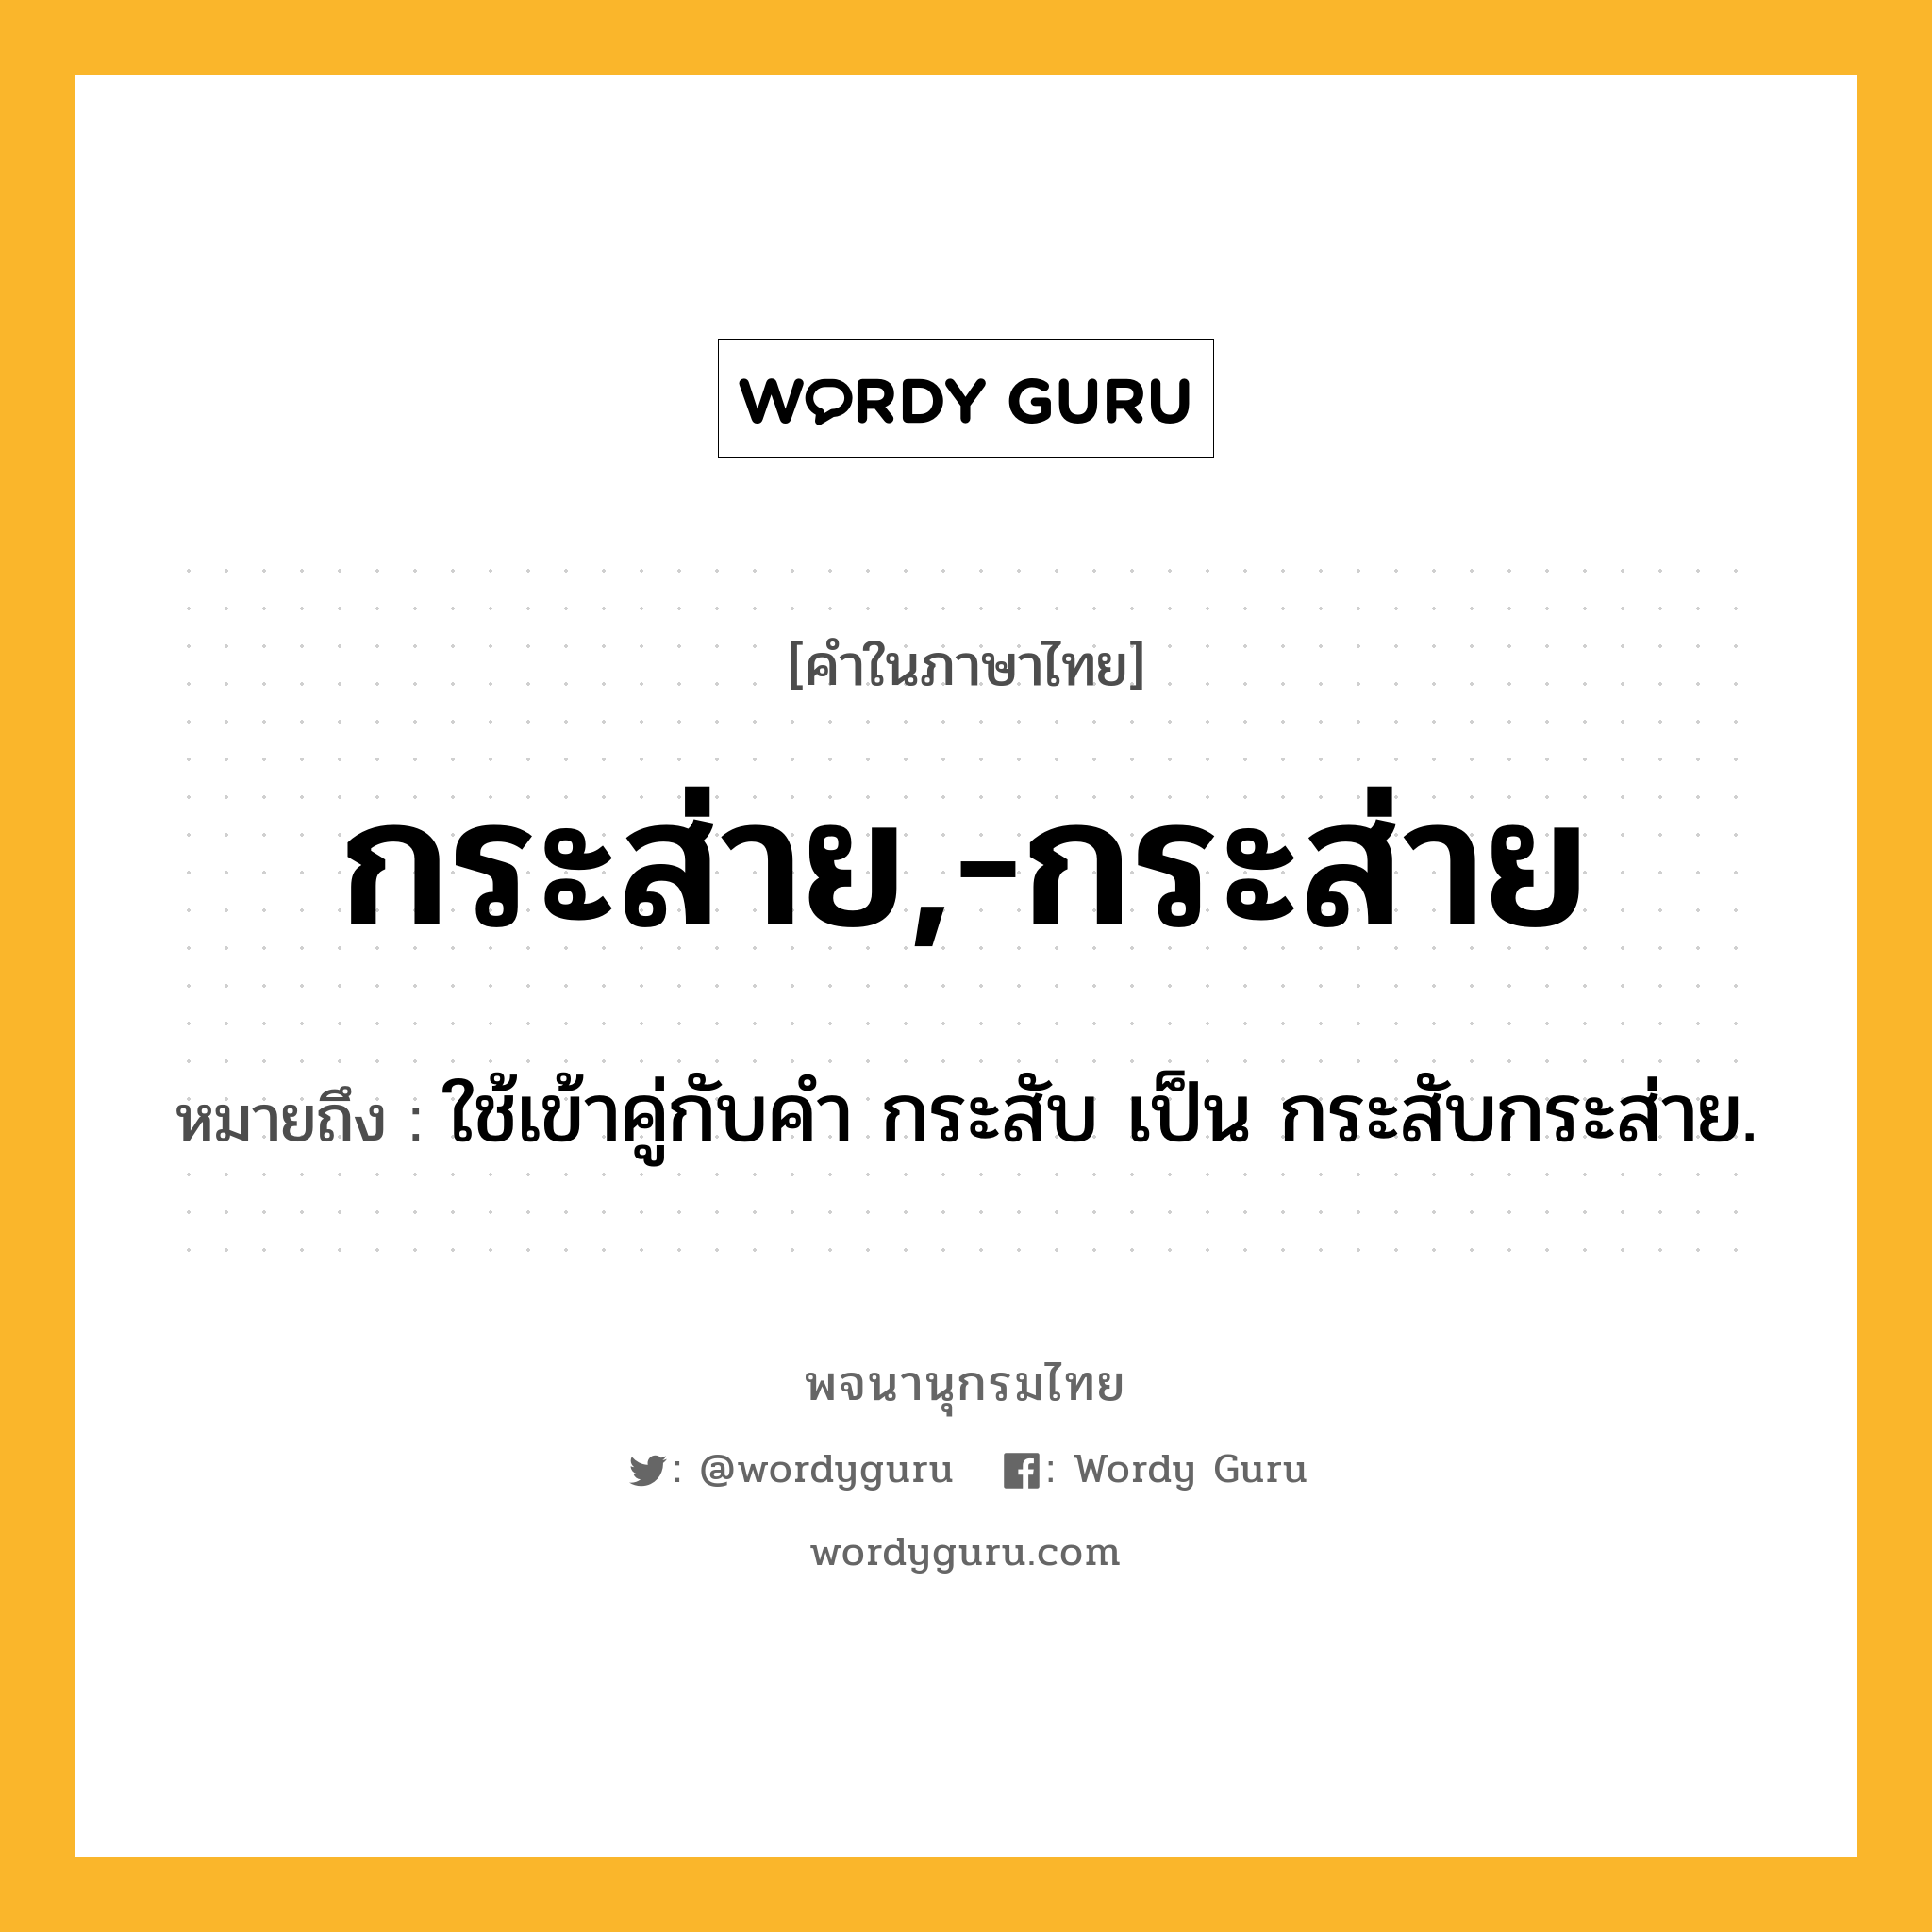 กระส่าย,-กระส่าย ความหมาย หมายถึงอะไร?, คำในภาษาไทย กระส่าย,-กระส่าย หมายถึง ใช้เข้าคู่กับคํา กระสับ เป็น กระสับกระส่าย.